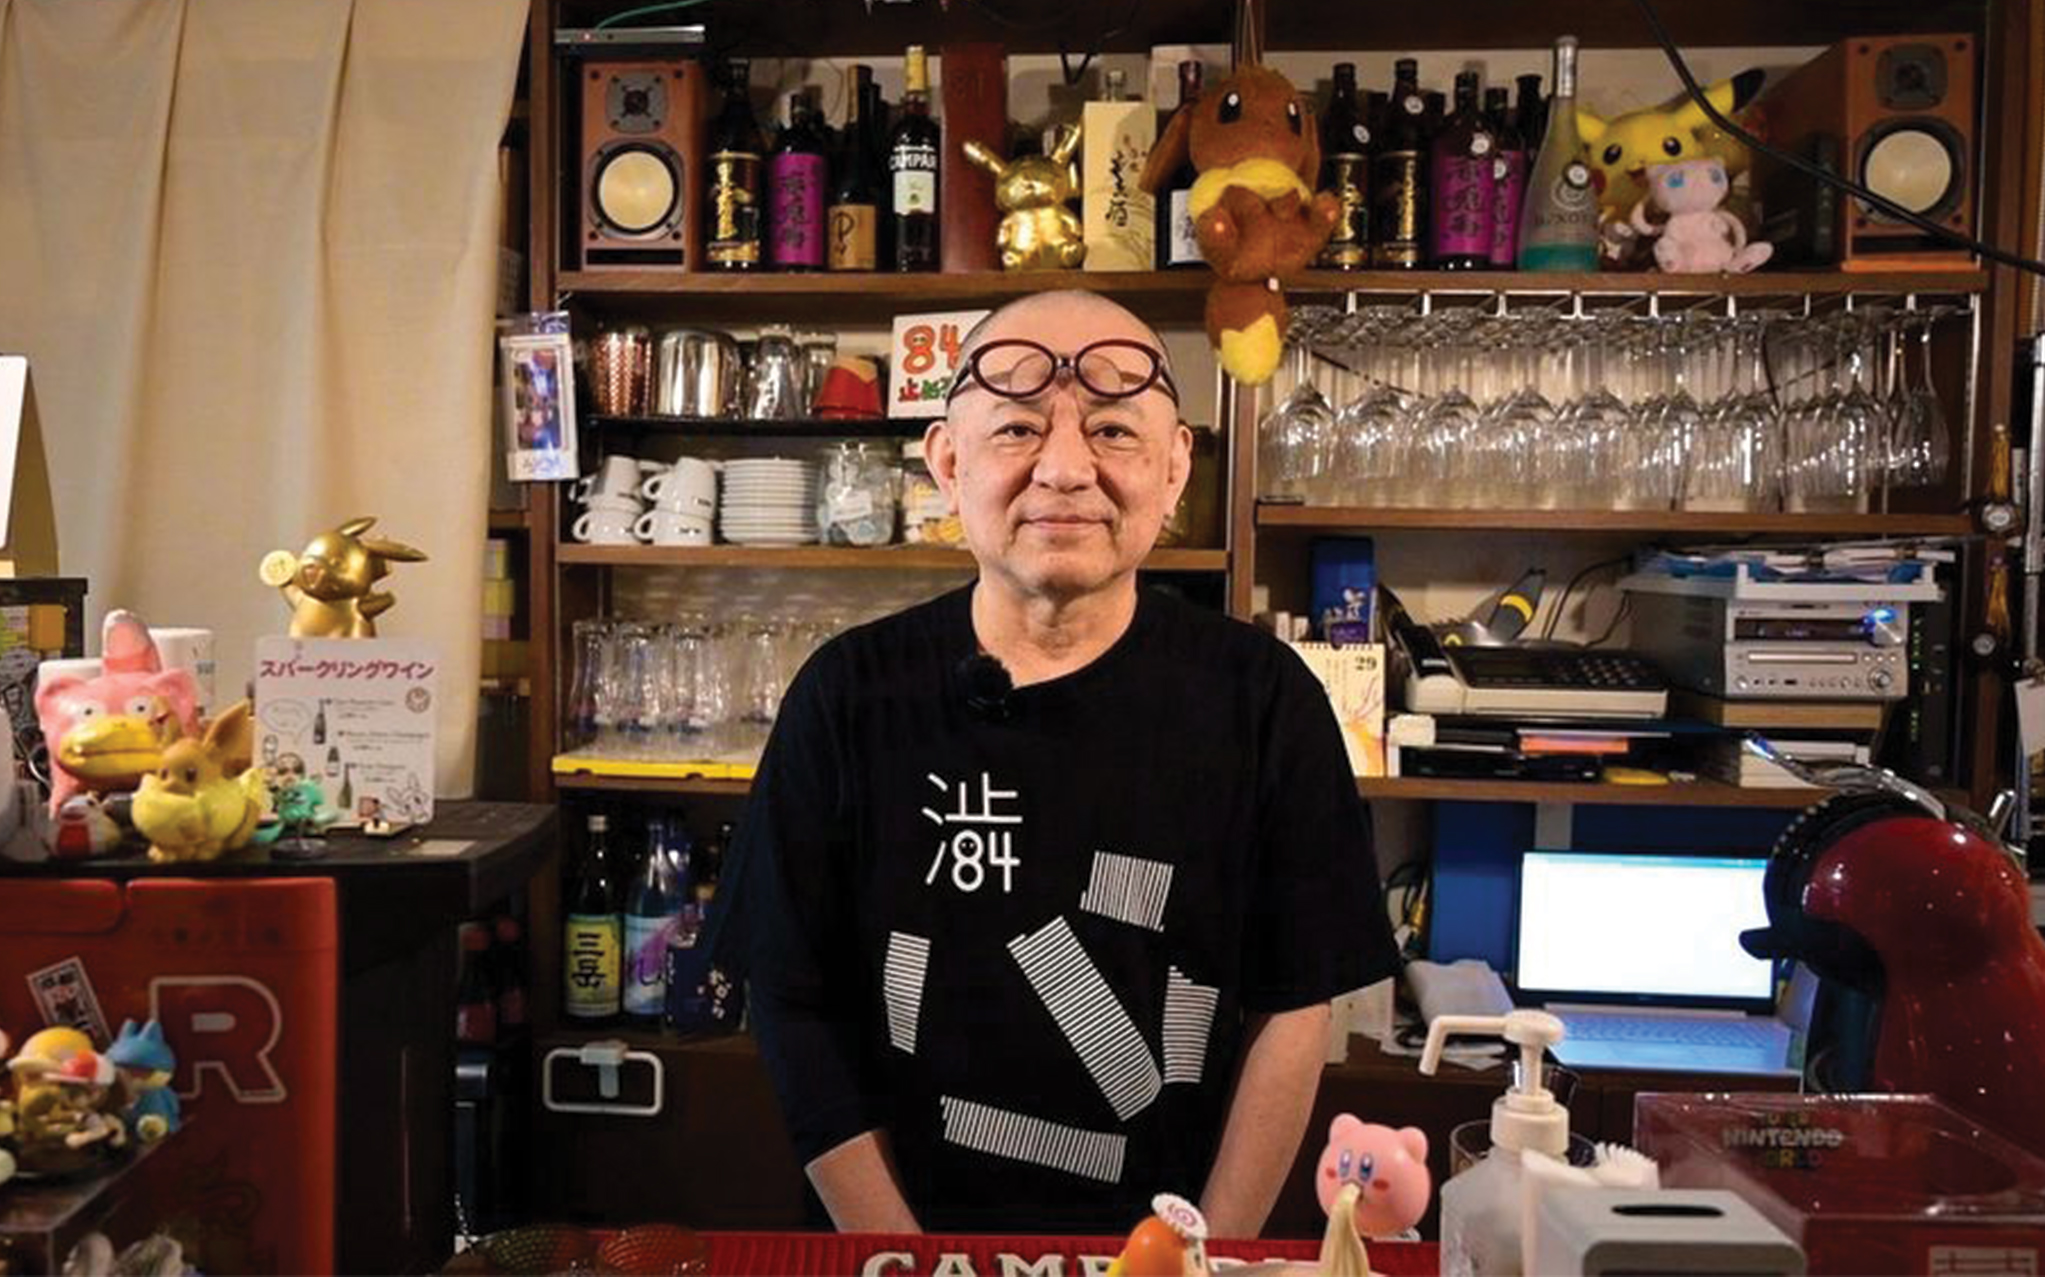 How to Find Tokyo’s Secret Nintendo Bar: 84 Hashi Cafe